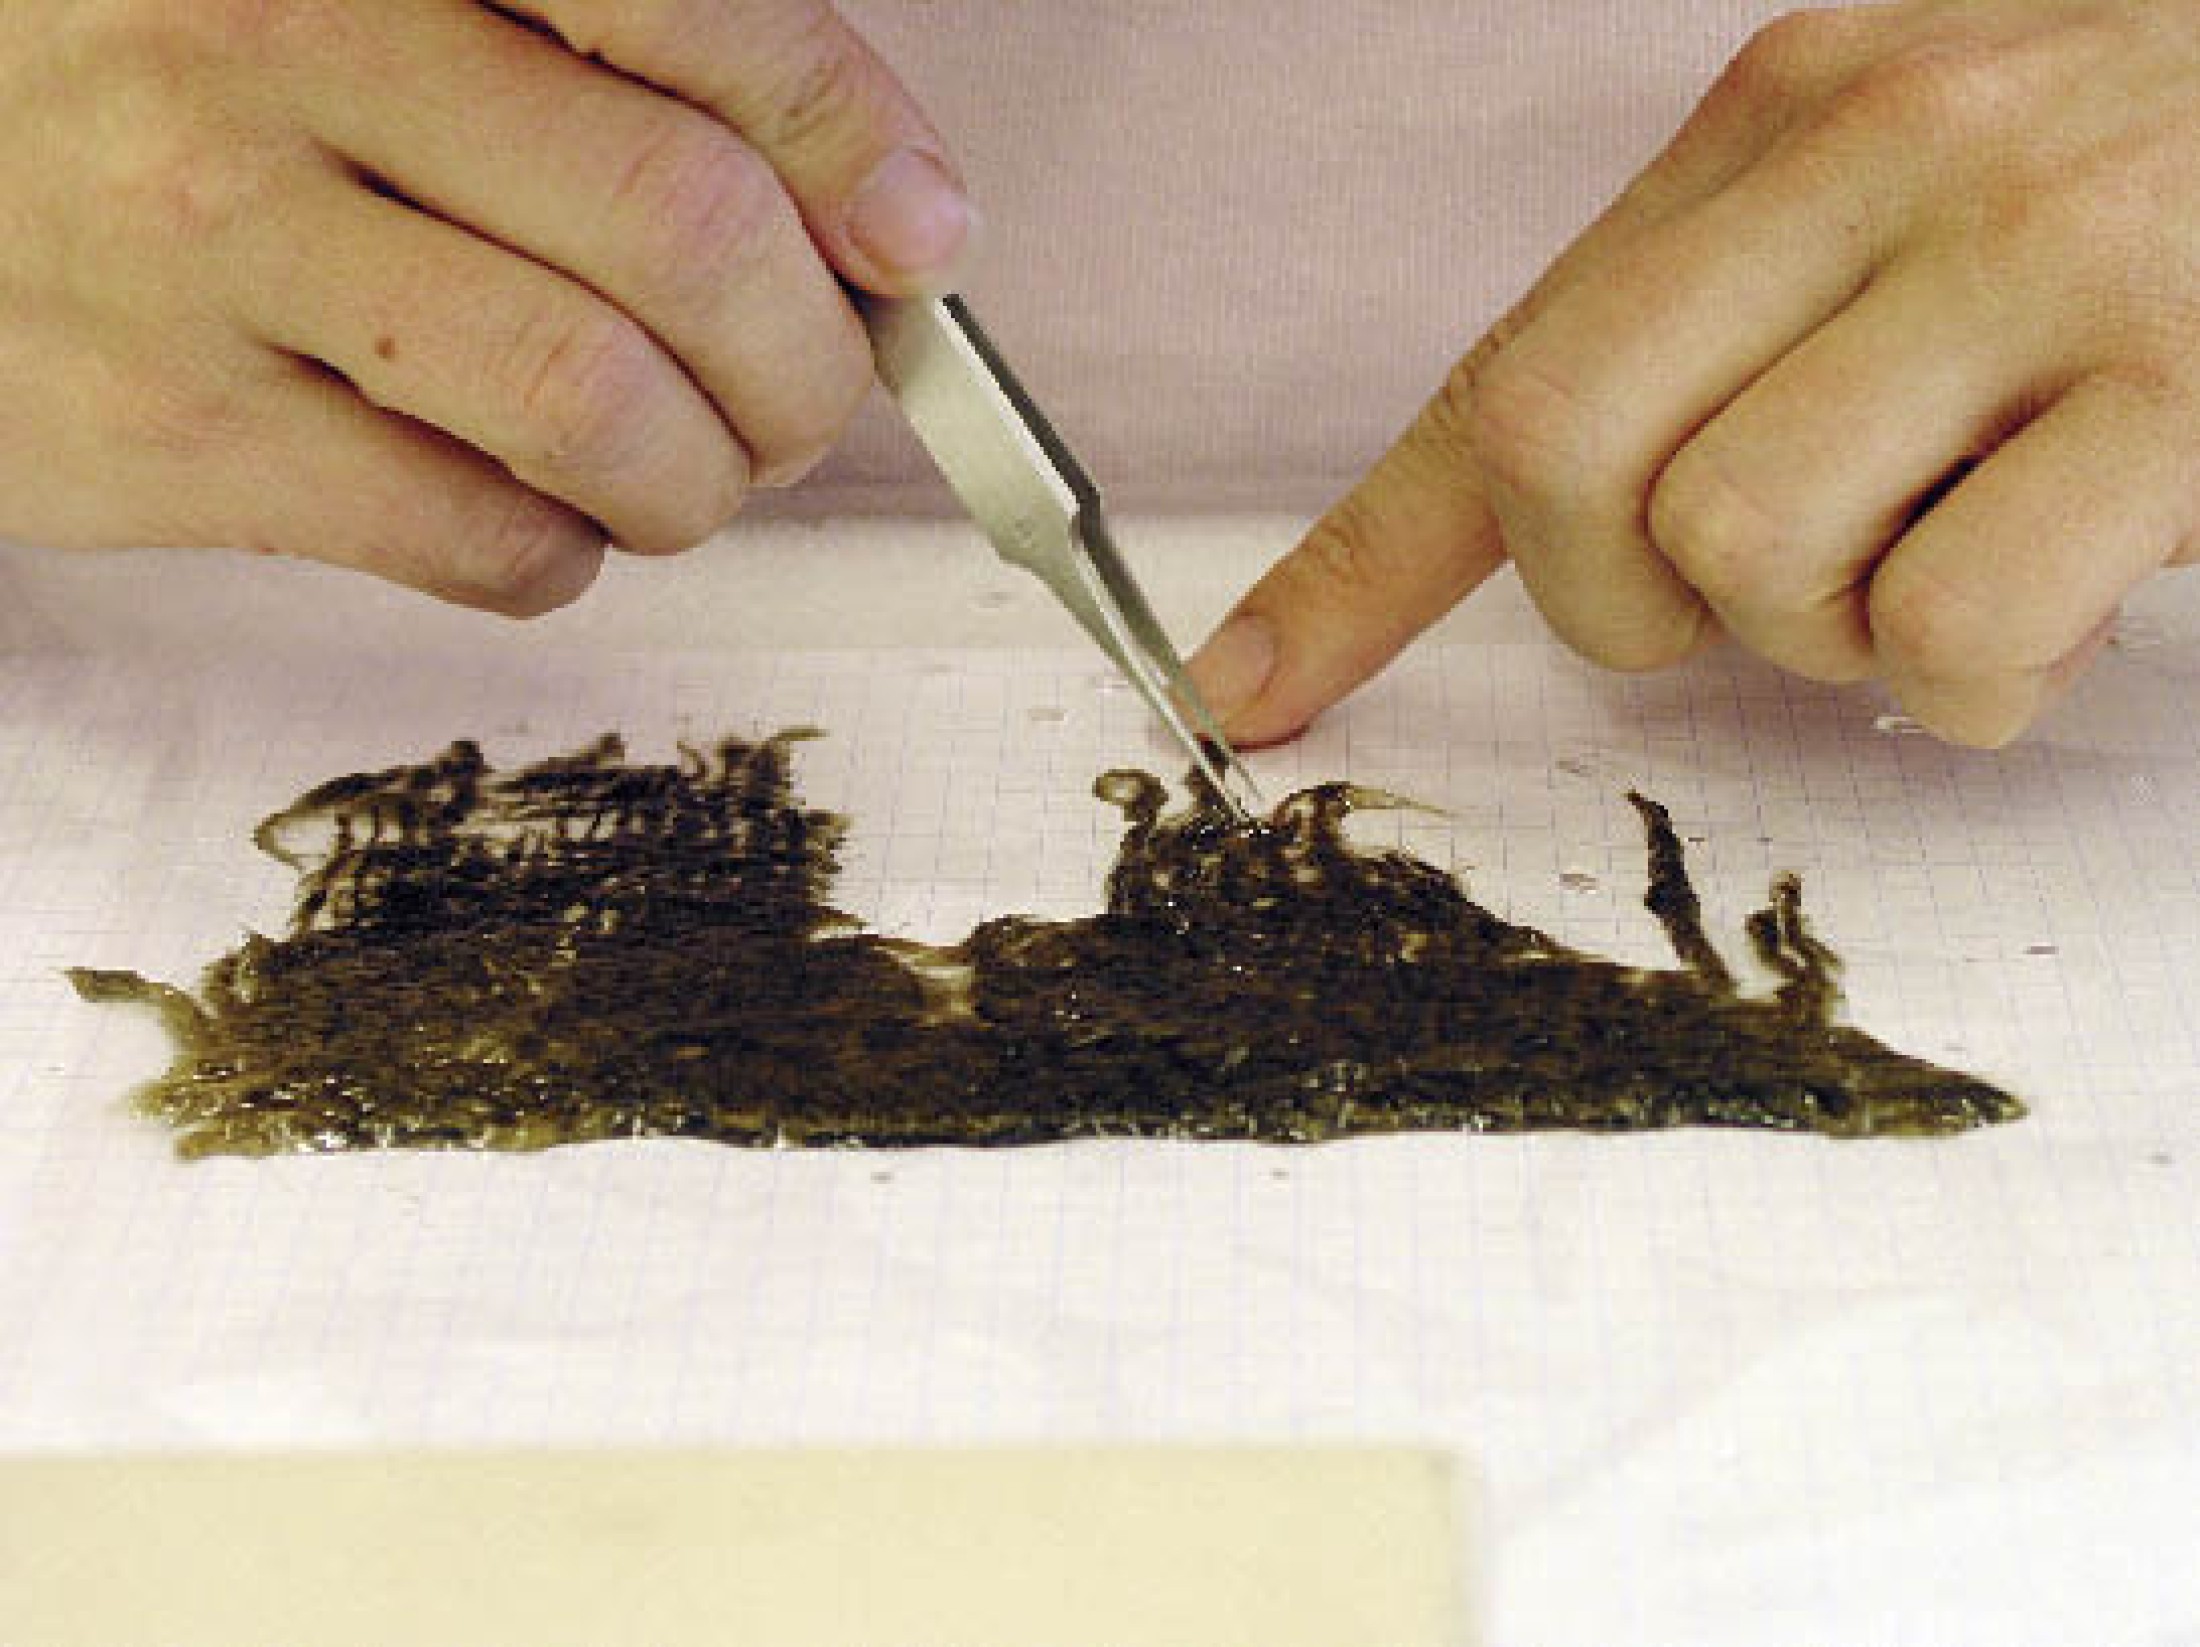 : Ordnung der Fäden der Textilien mit der Pinzette. (Foto: A. W. Rausch - NHM Wien)